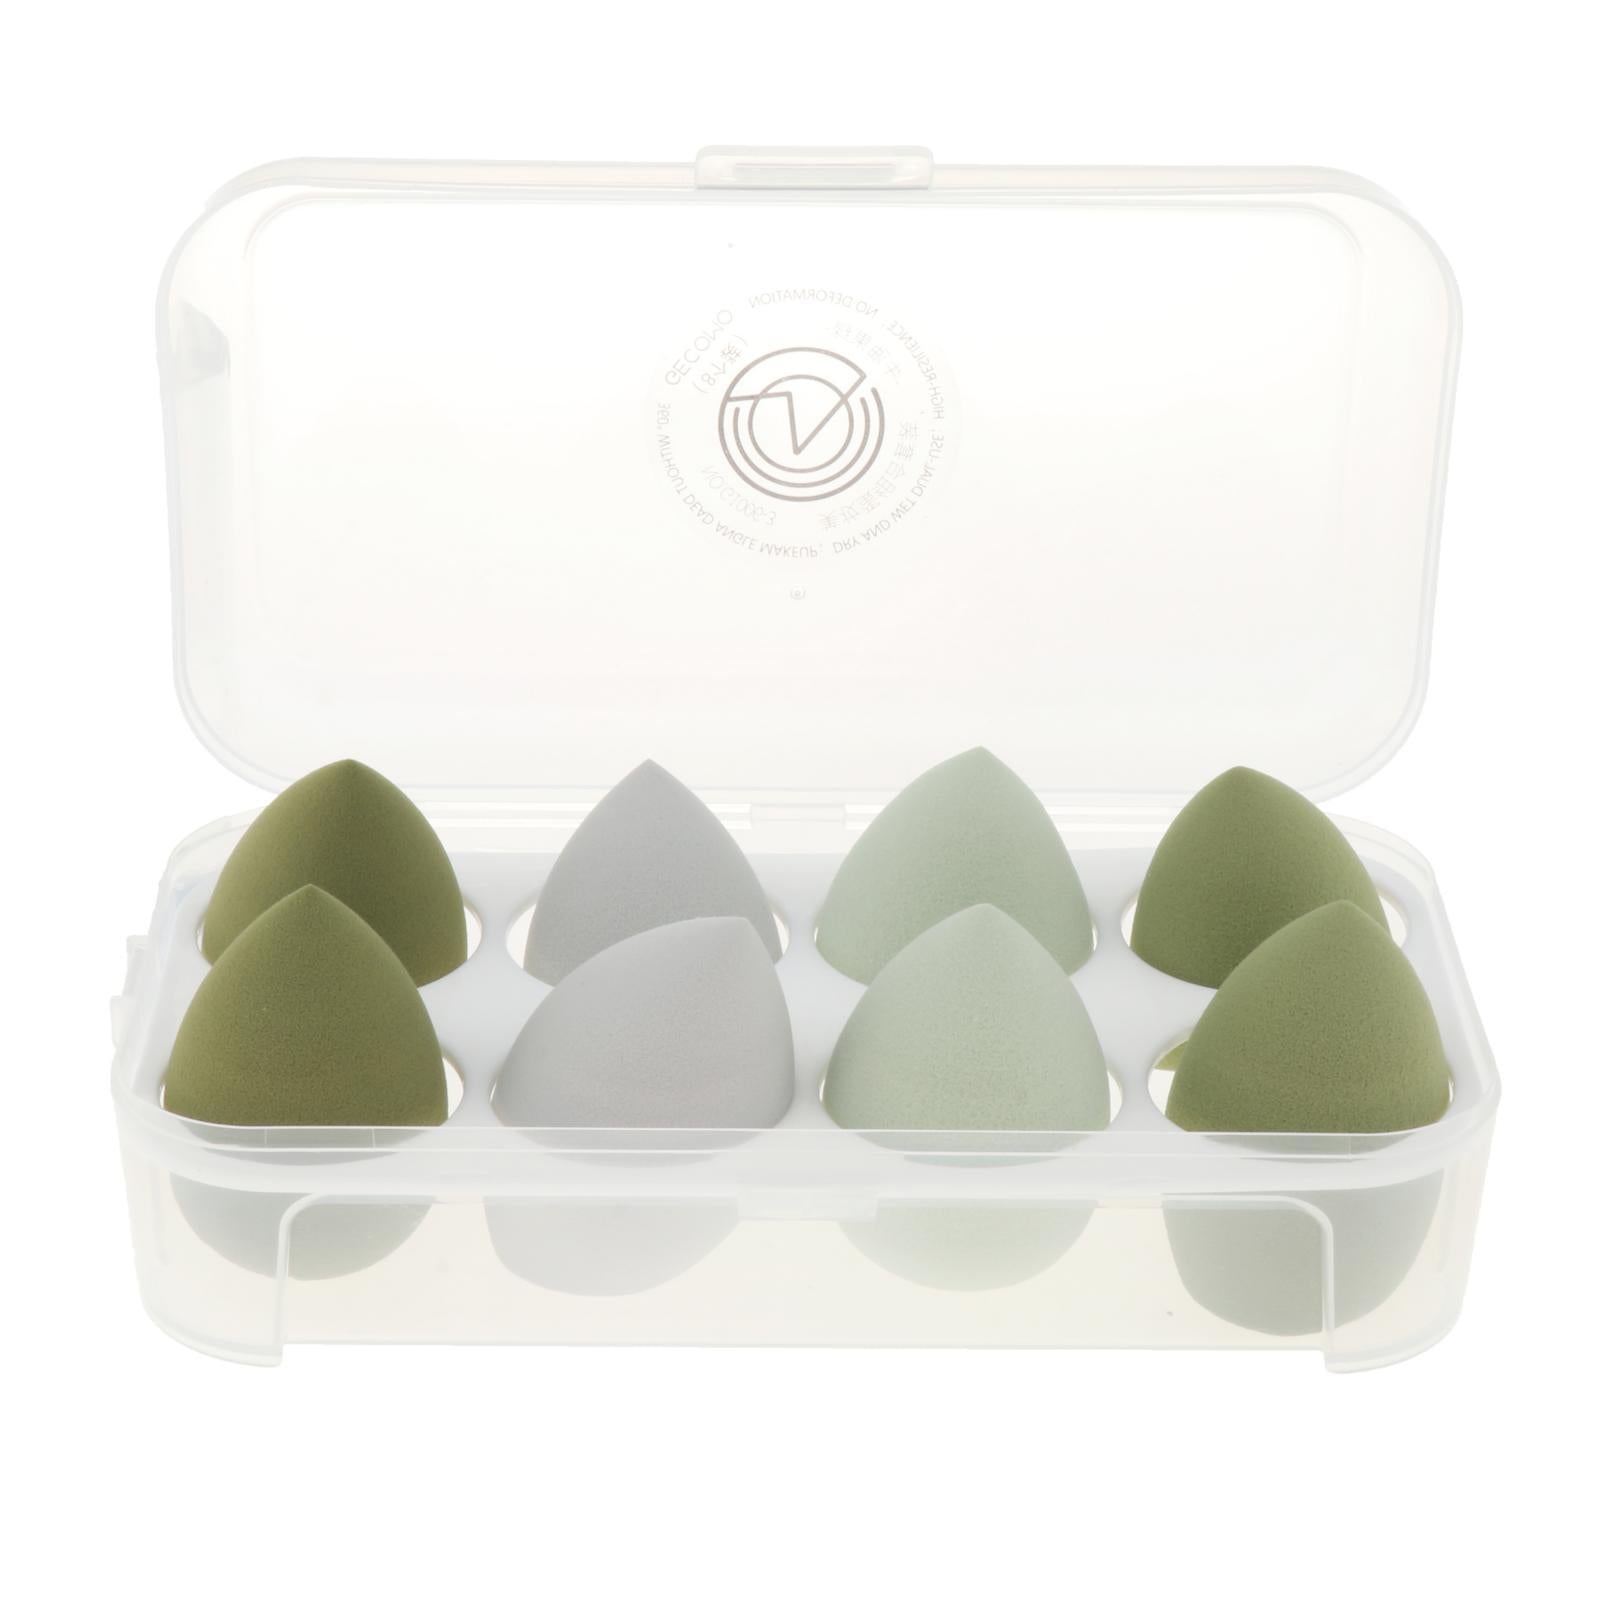 8x Beauty Makeup Sponge Set Blender Blending Foundation  Avocado Green